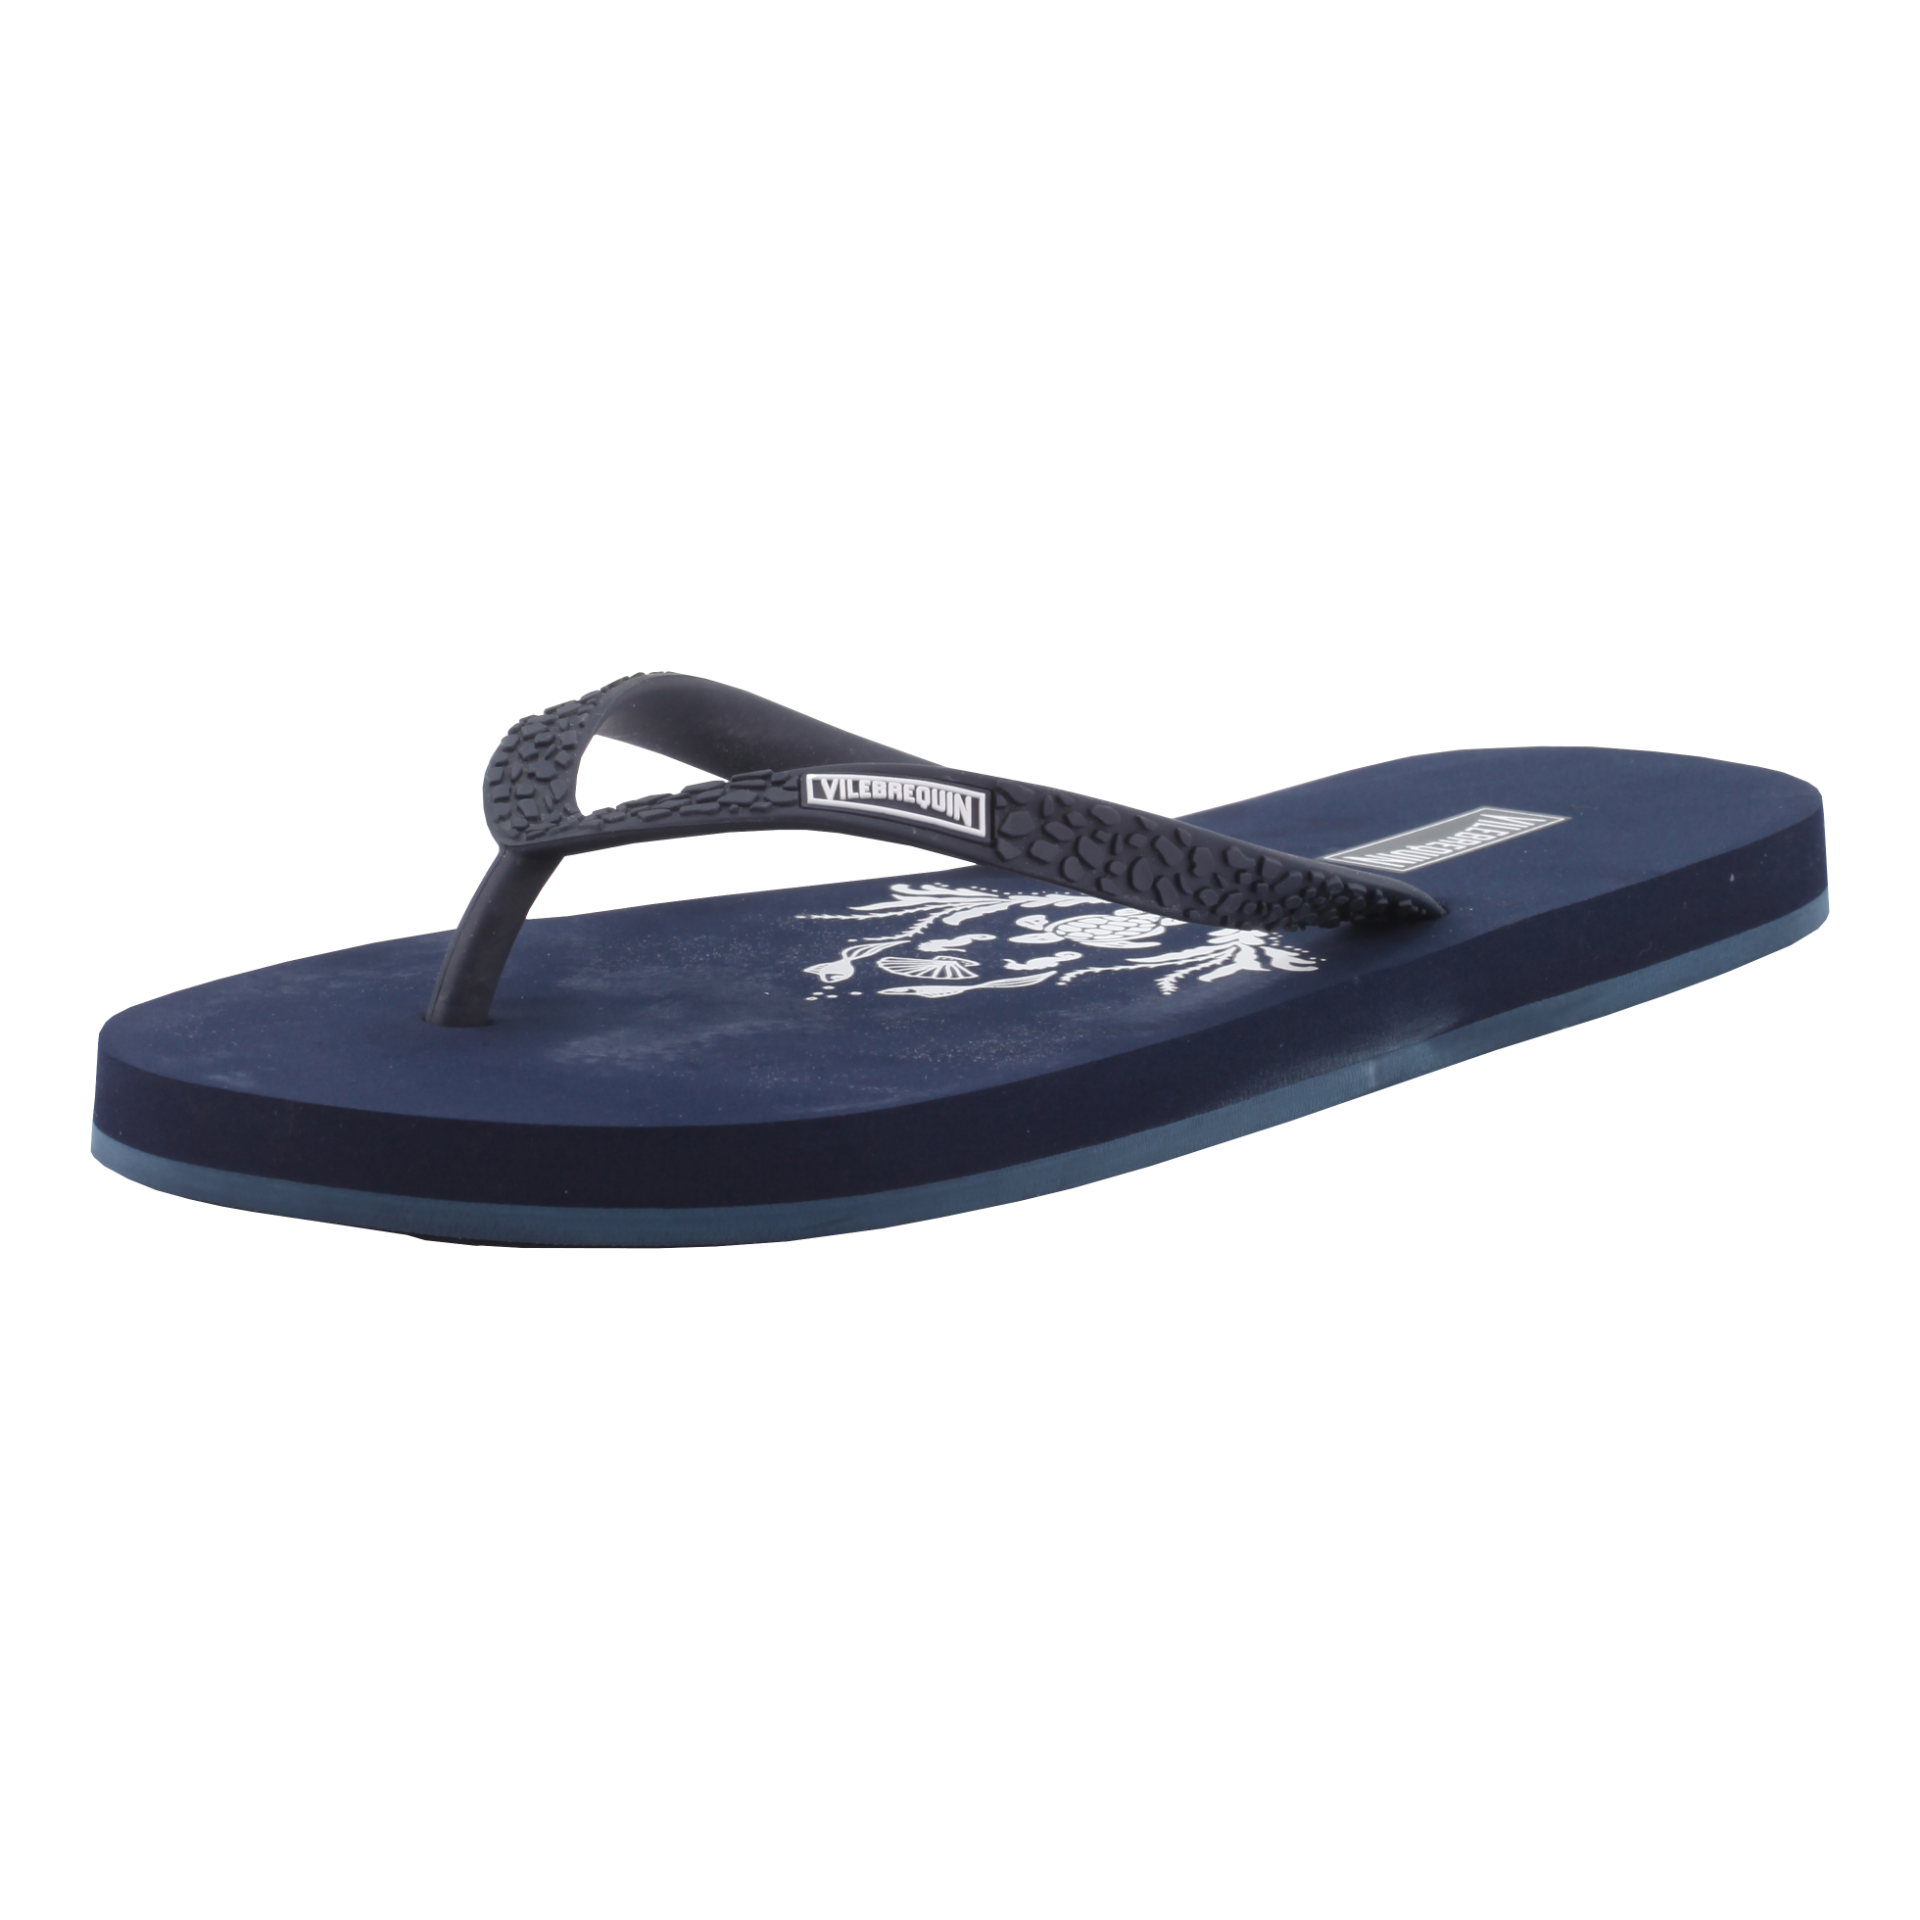 VILEBREQUIN Flip Flops Navy - Authentic & New - Size 4 / 5 - RRP Â£65+ ! - Image 5 of 7